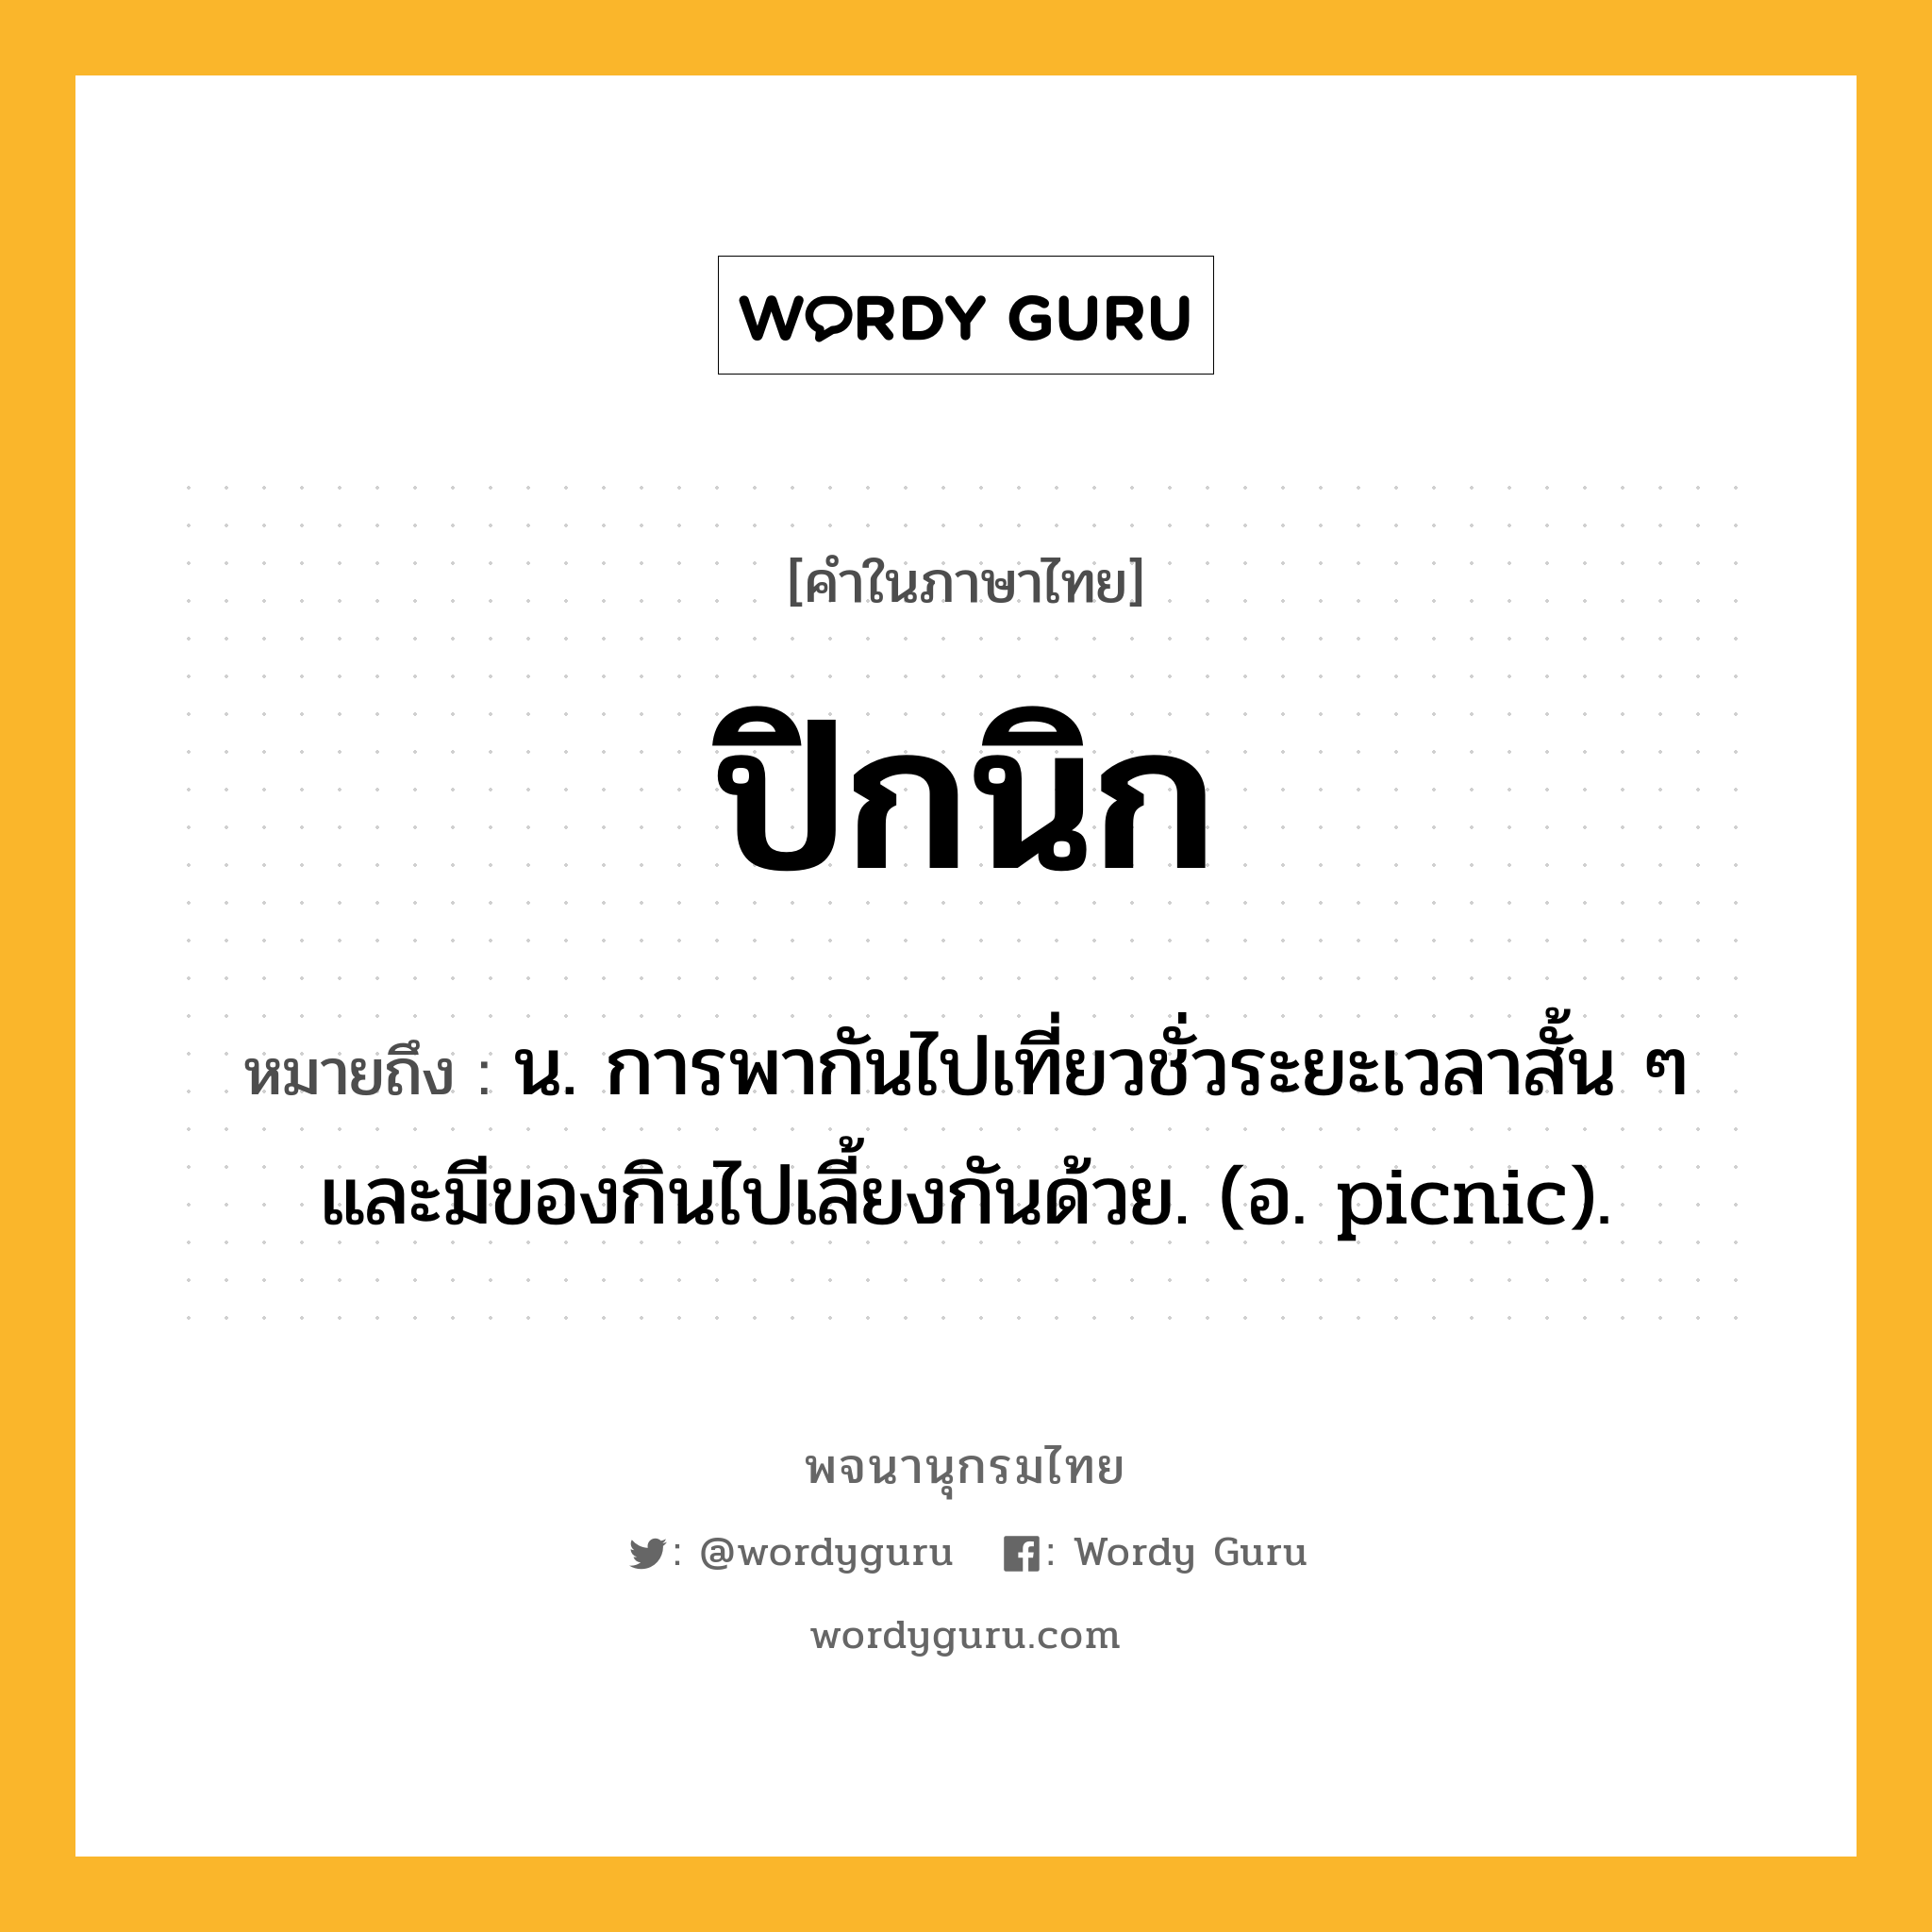 ปิกนิก หมายถึงอะไร?, คำในภาษาไทย ปิกนิก หมายถึง น. การพากันไปเที่ยวชั่วระยะเวลาสั้น ๆ และมีของกินไปเลี้ยงกันด้วย. (อ. picnic).